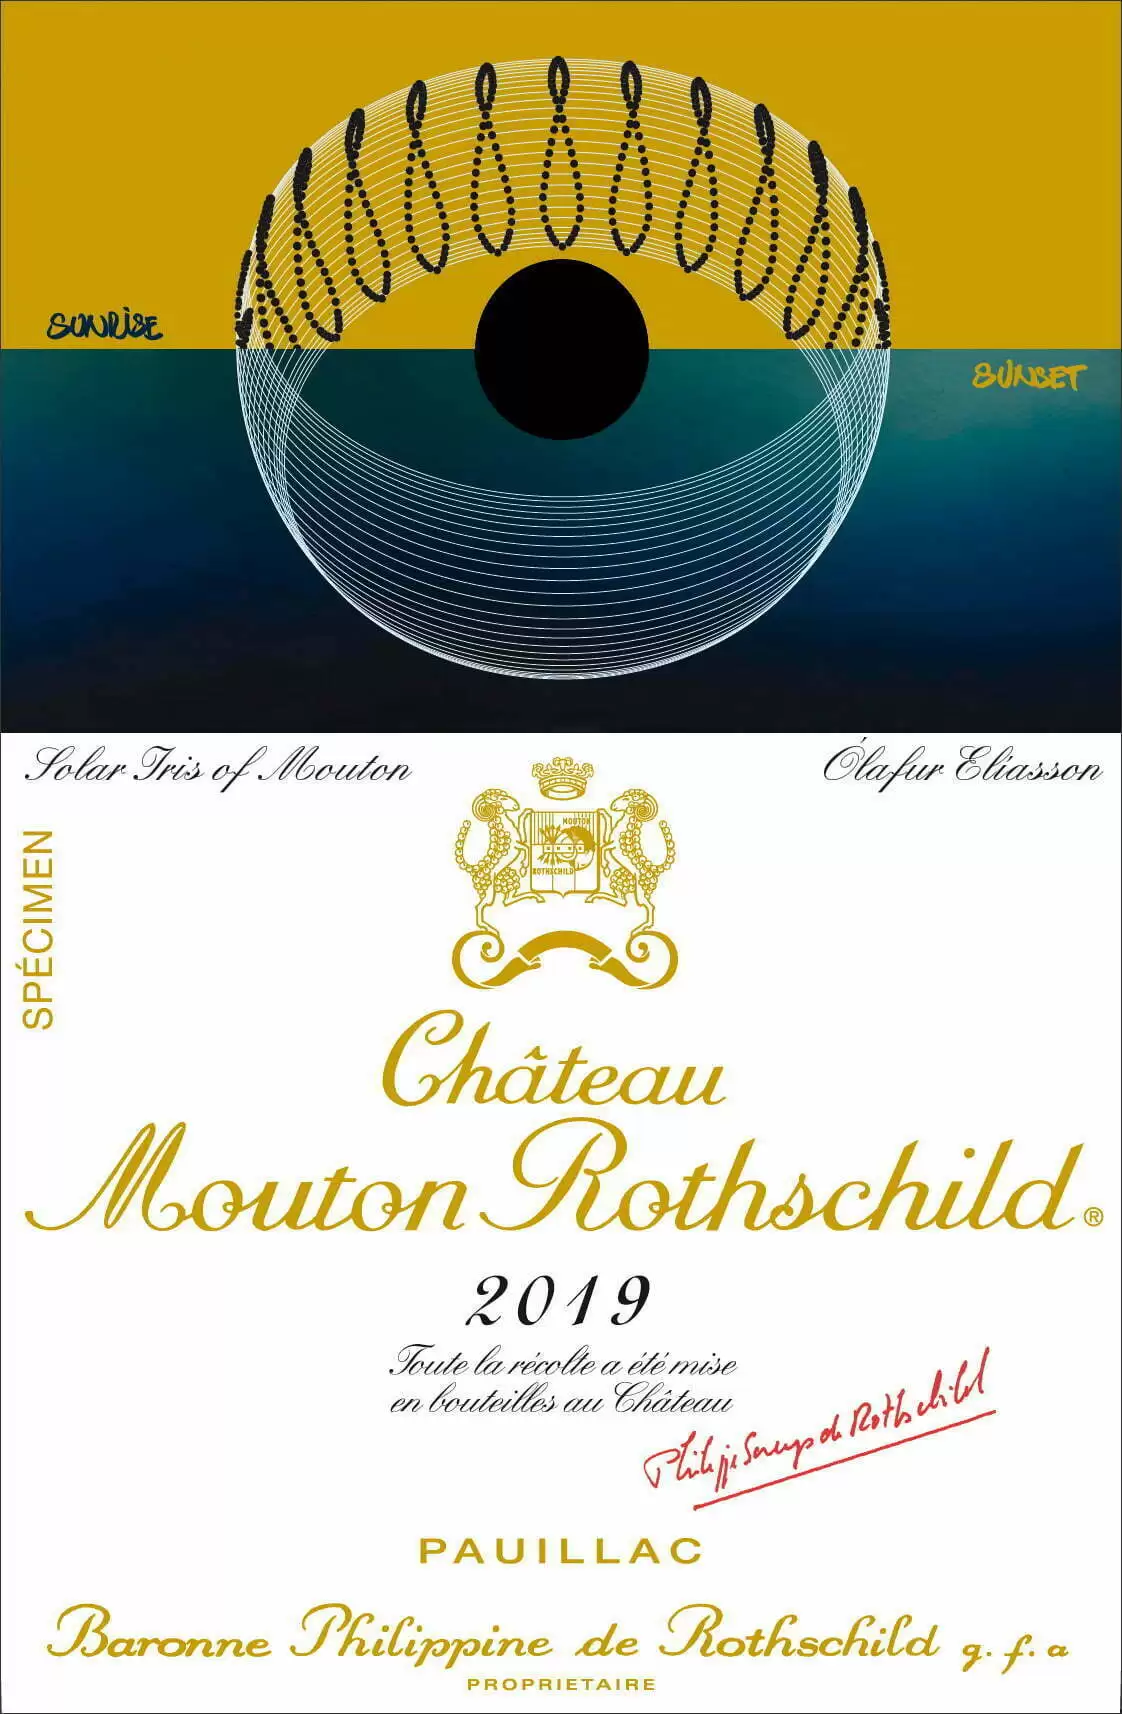 Artistul nordic Olafur Eliasson a fost ales să realizeze o lucrare pentru eticheta vinului Château Mouton Rothschild 2019